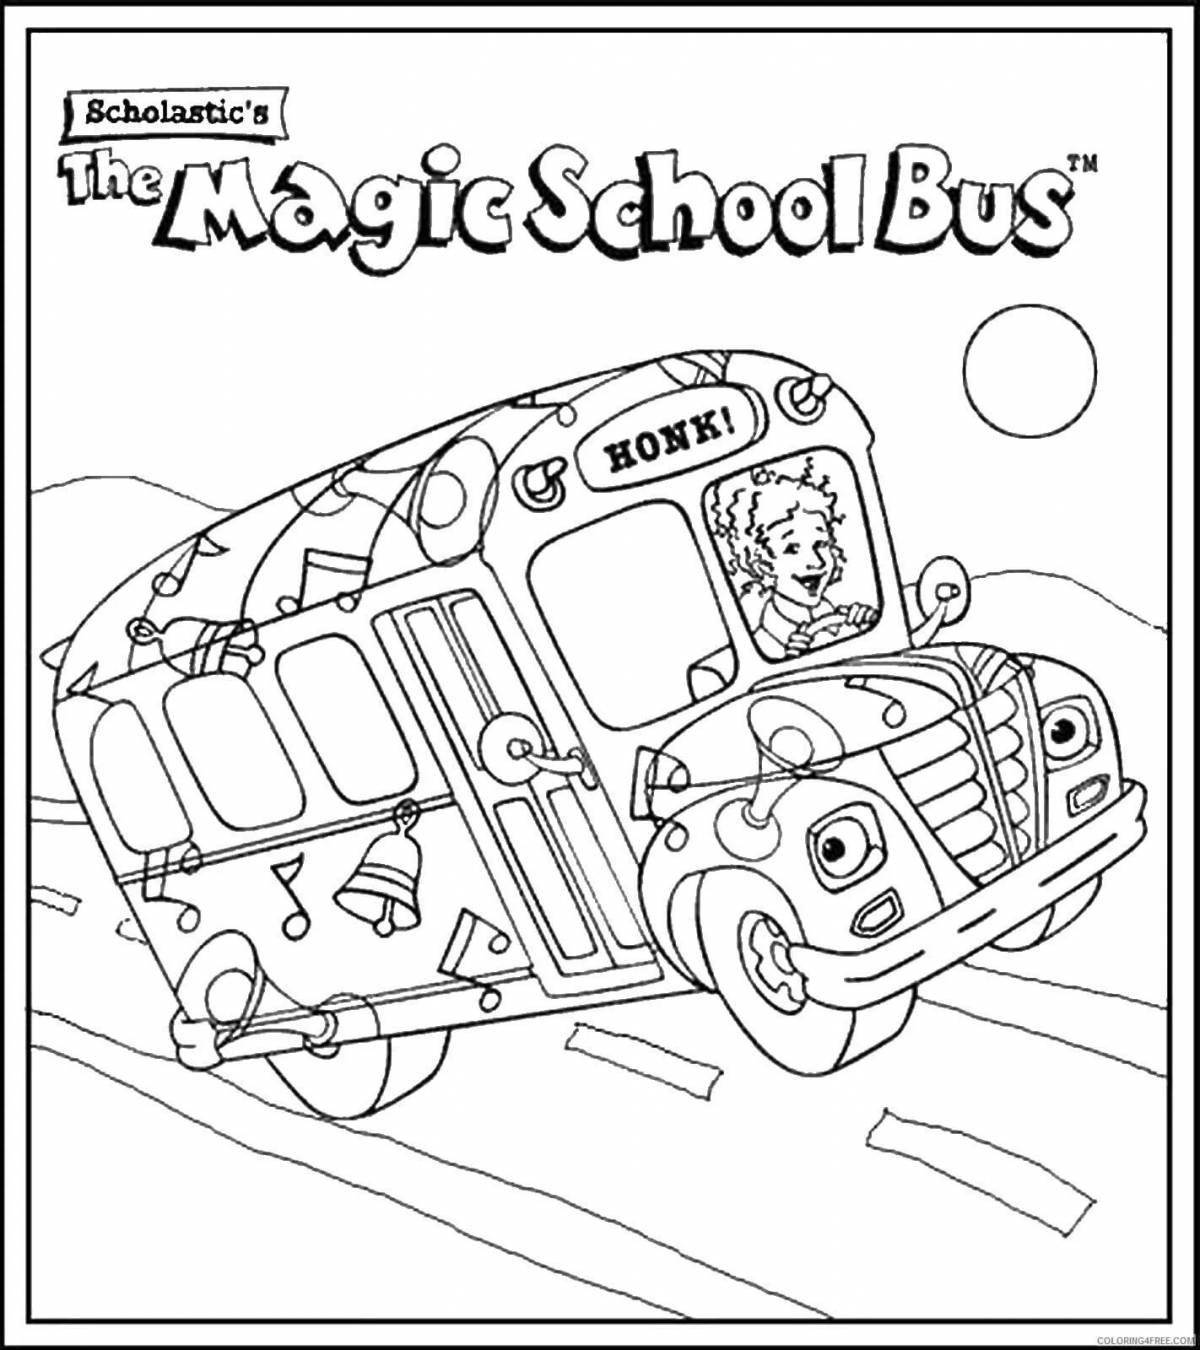 Gordon's funny school bus coloring page